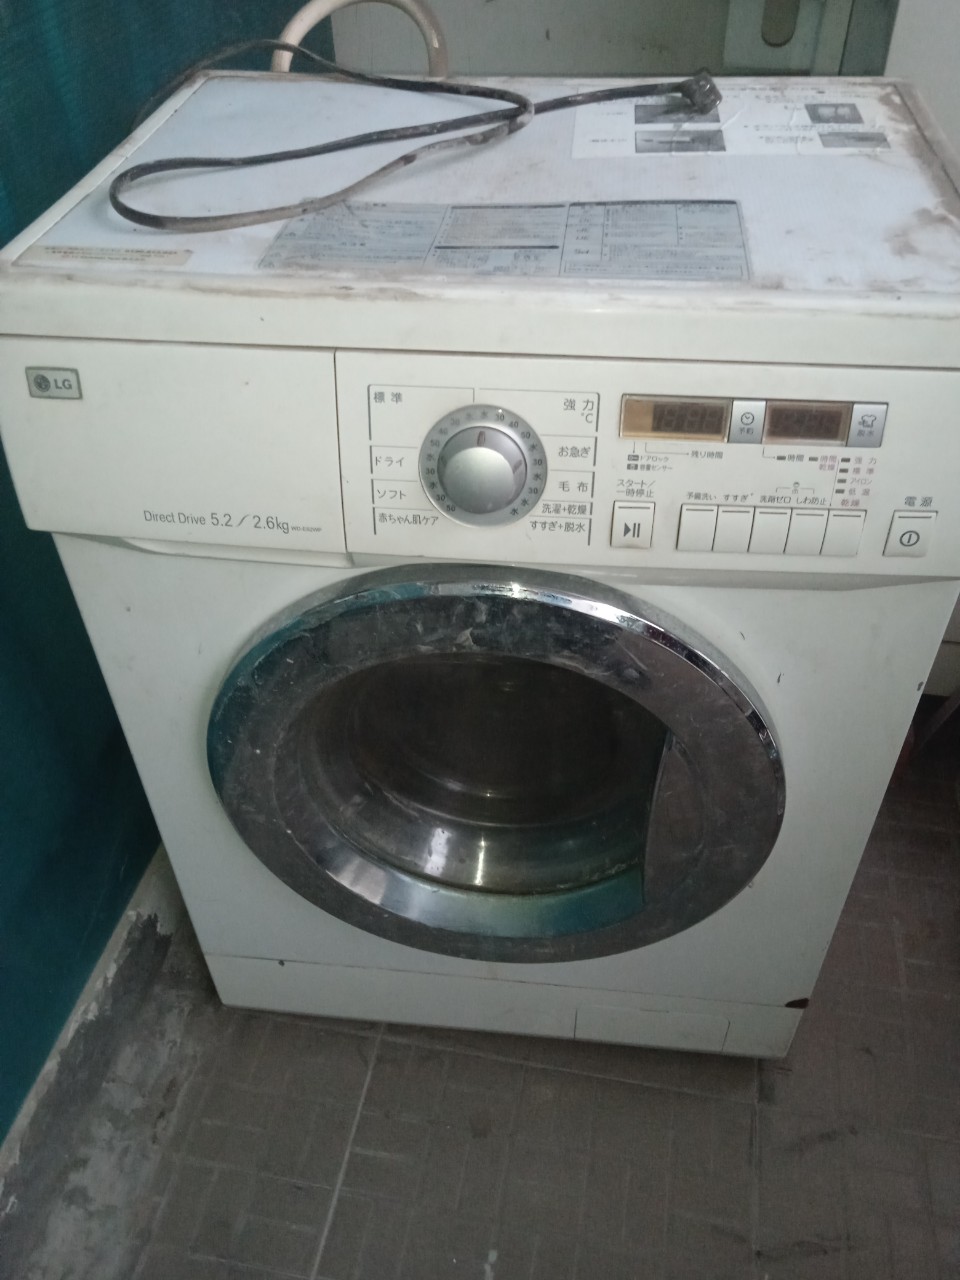 Thu mua máy giặt cũ tại Đống Đa